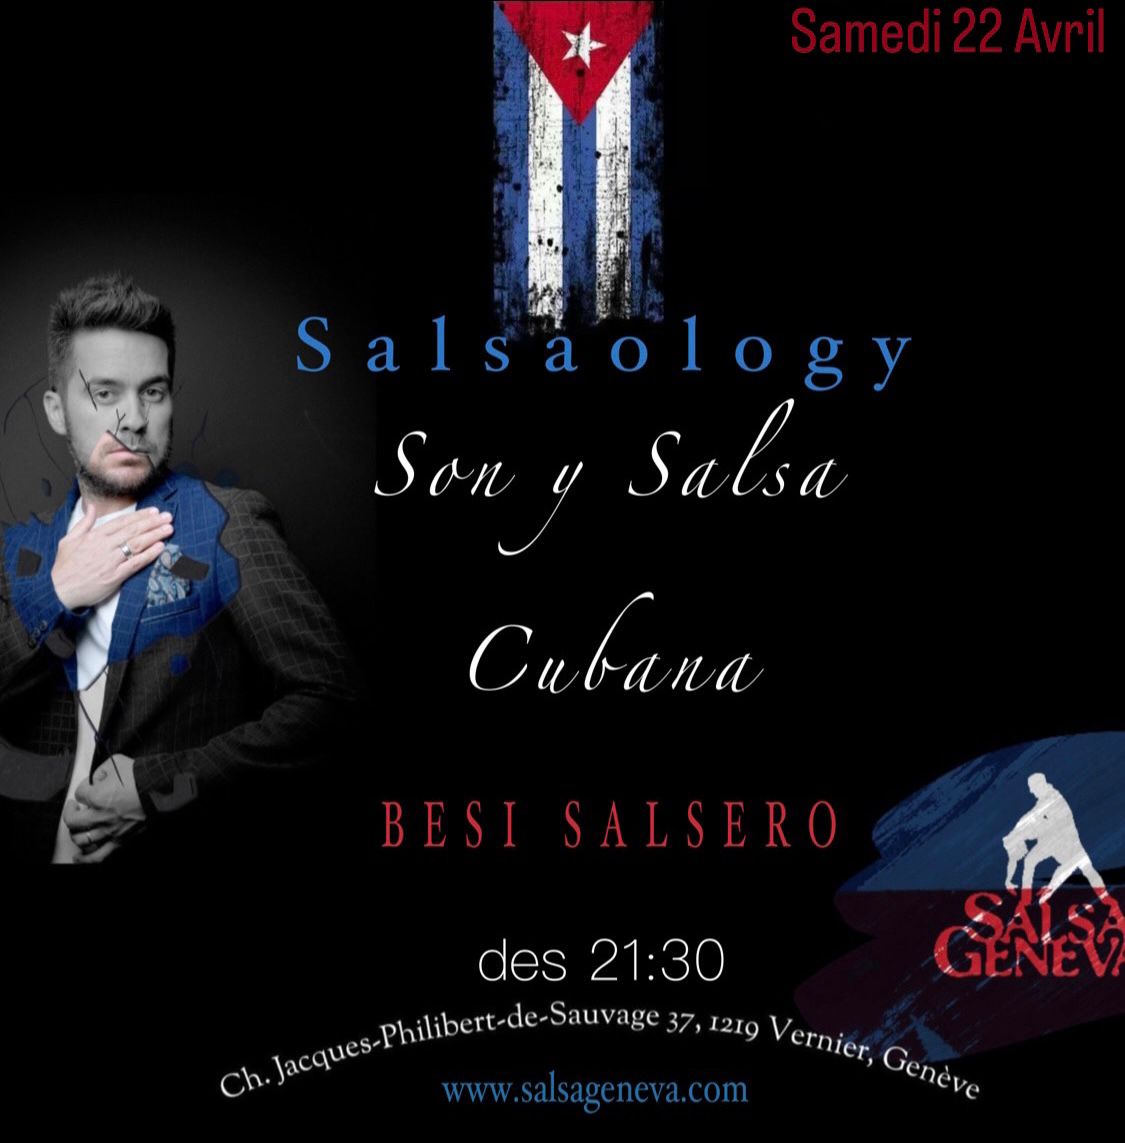 SalsaOlogy